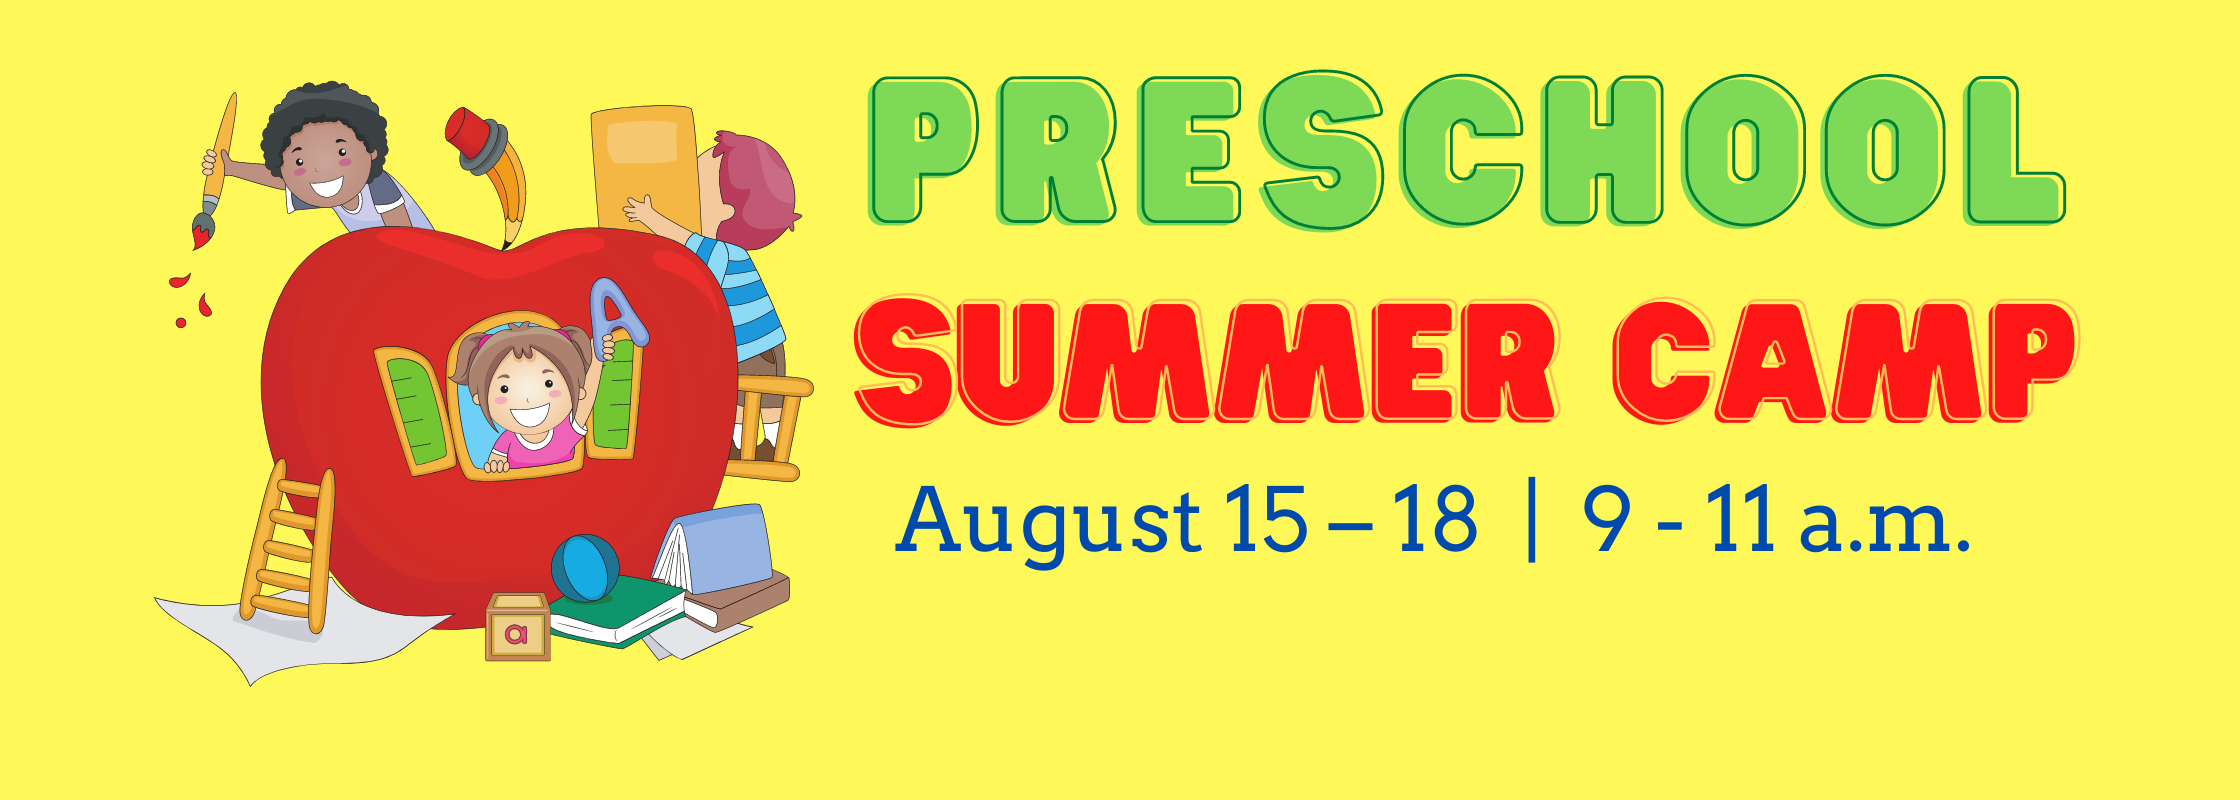 preschool summer camp August 15-18, 9-11AM